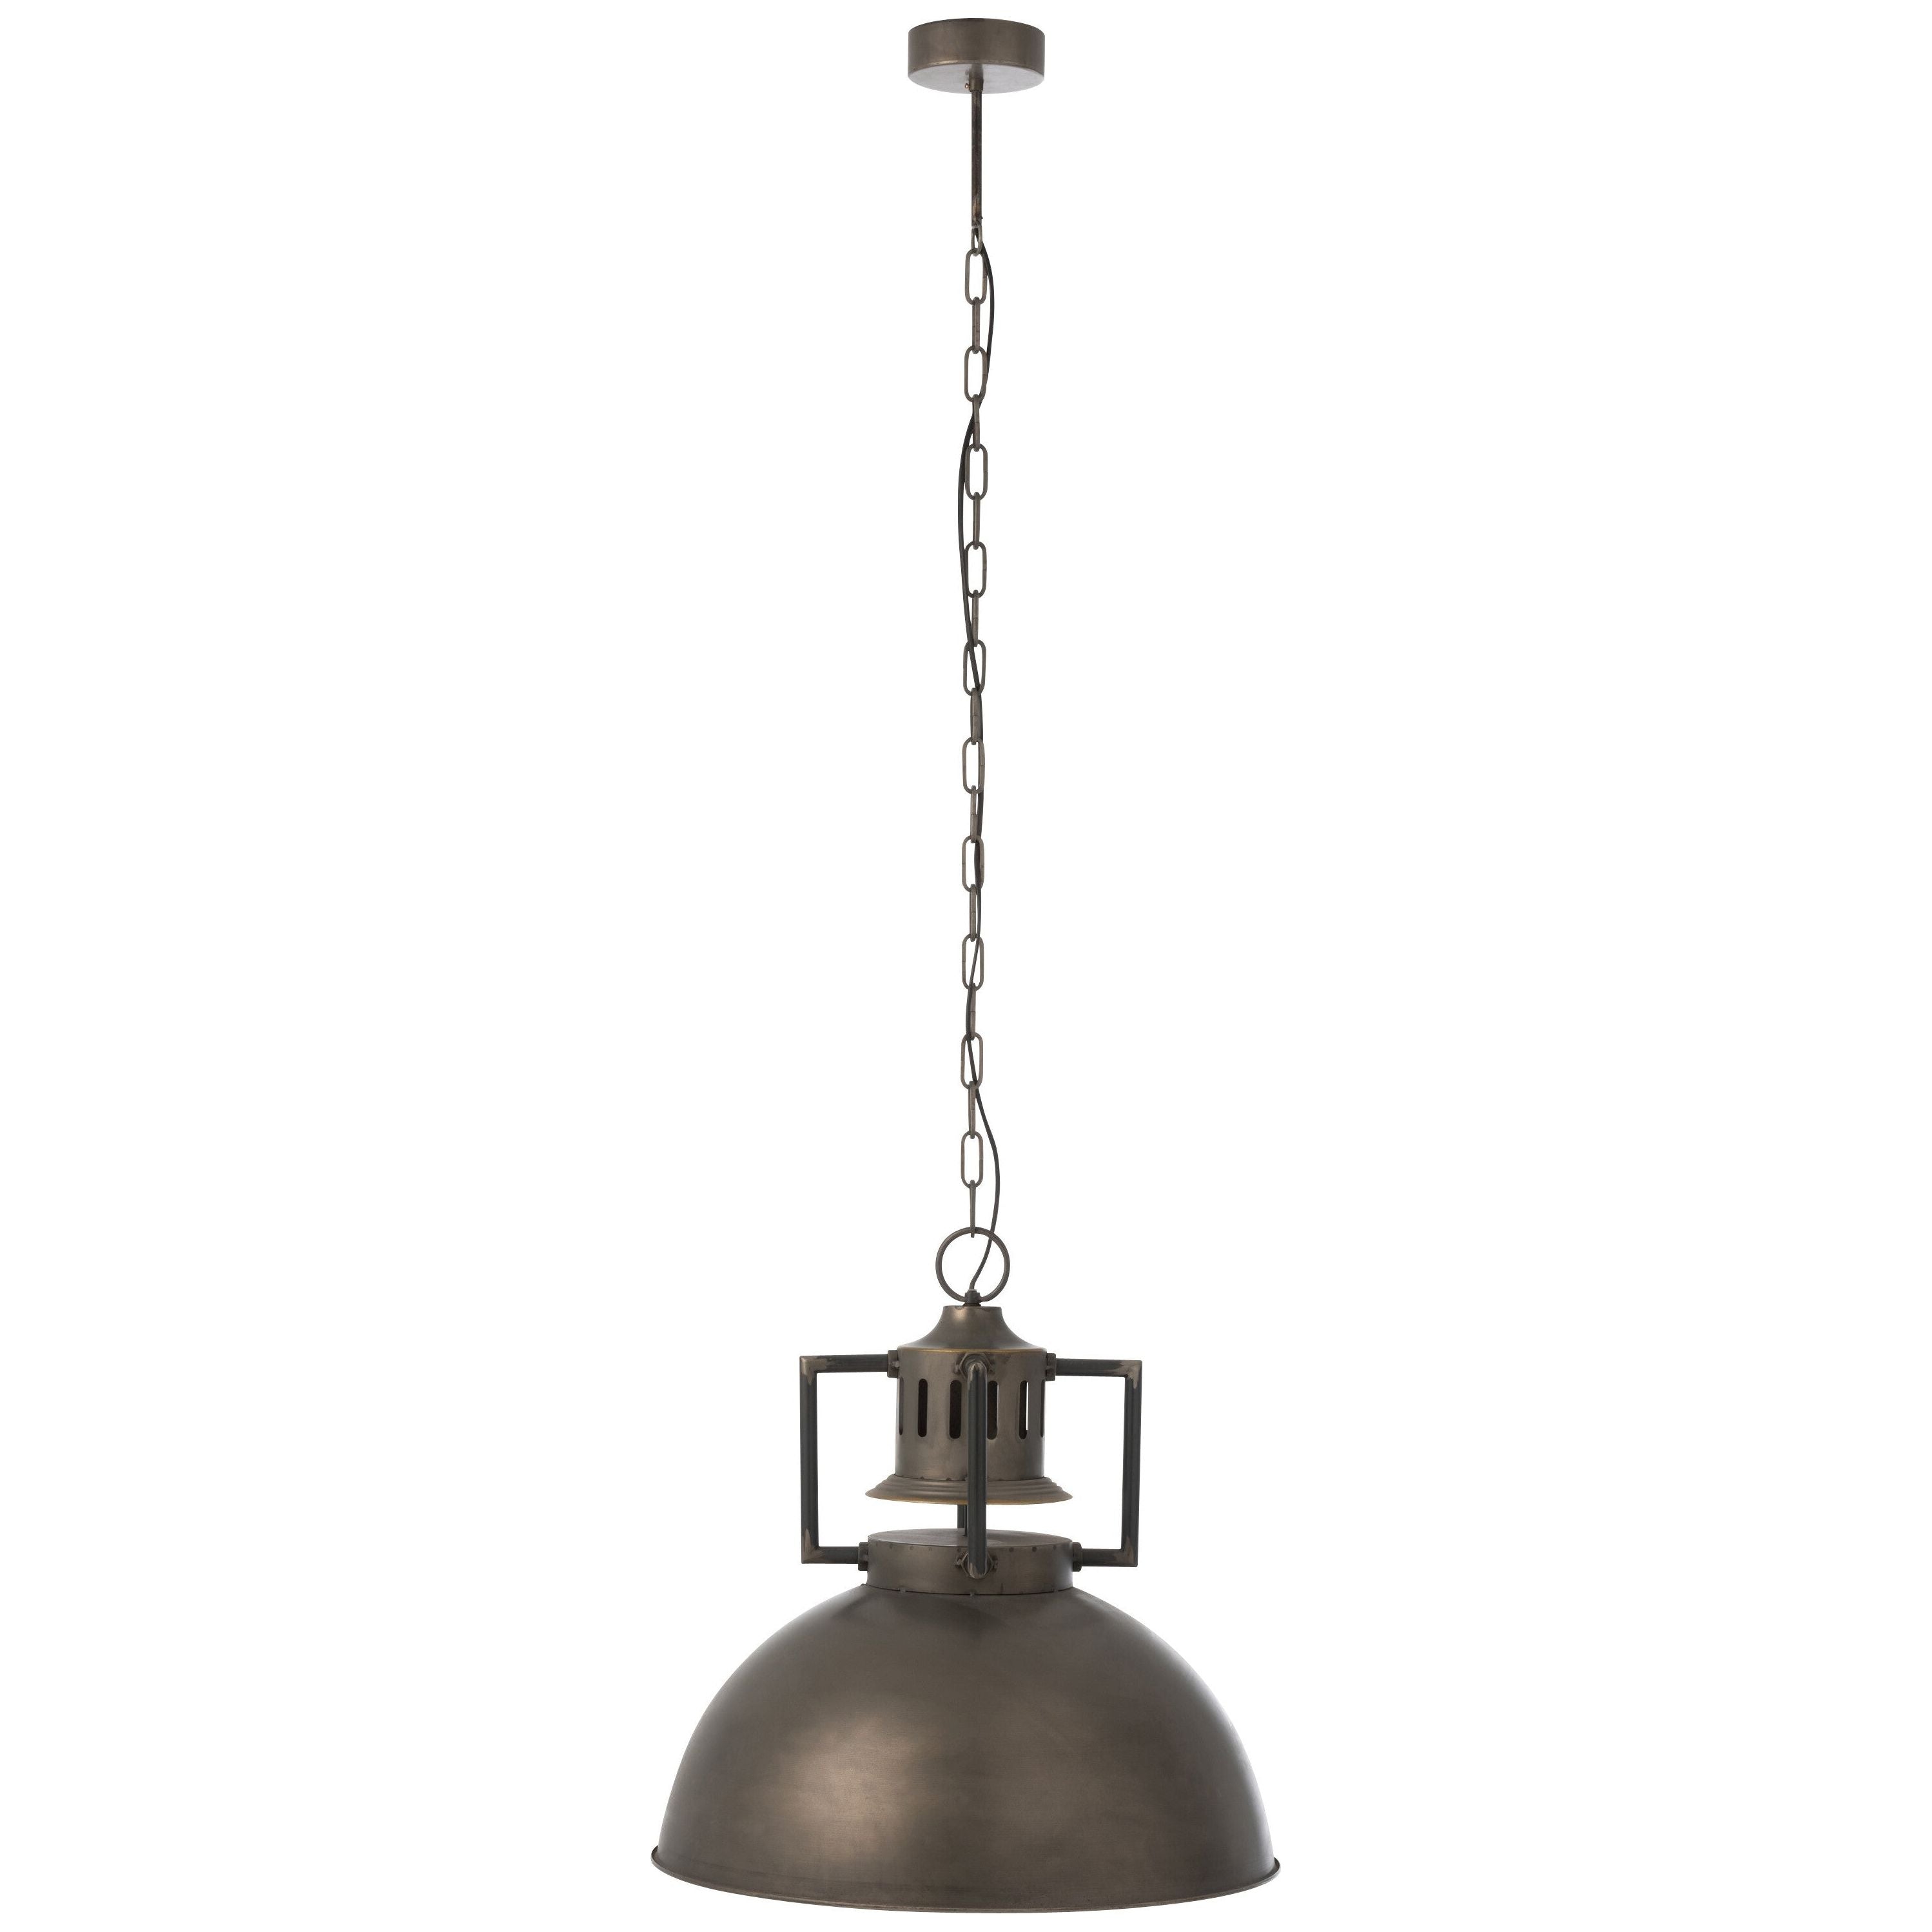 Hanging Lamp Industrial Metal Gray